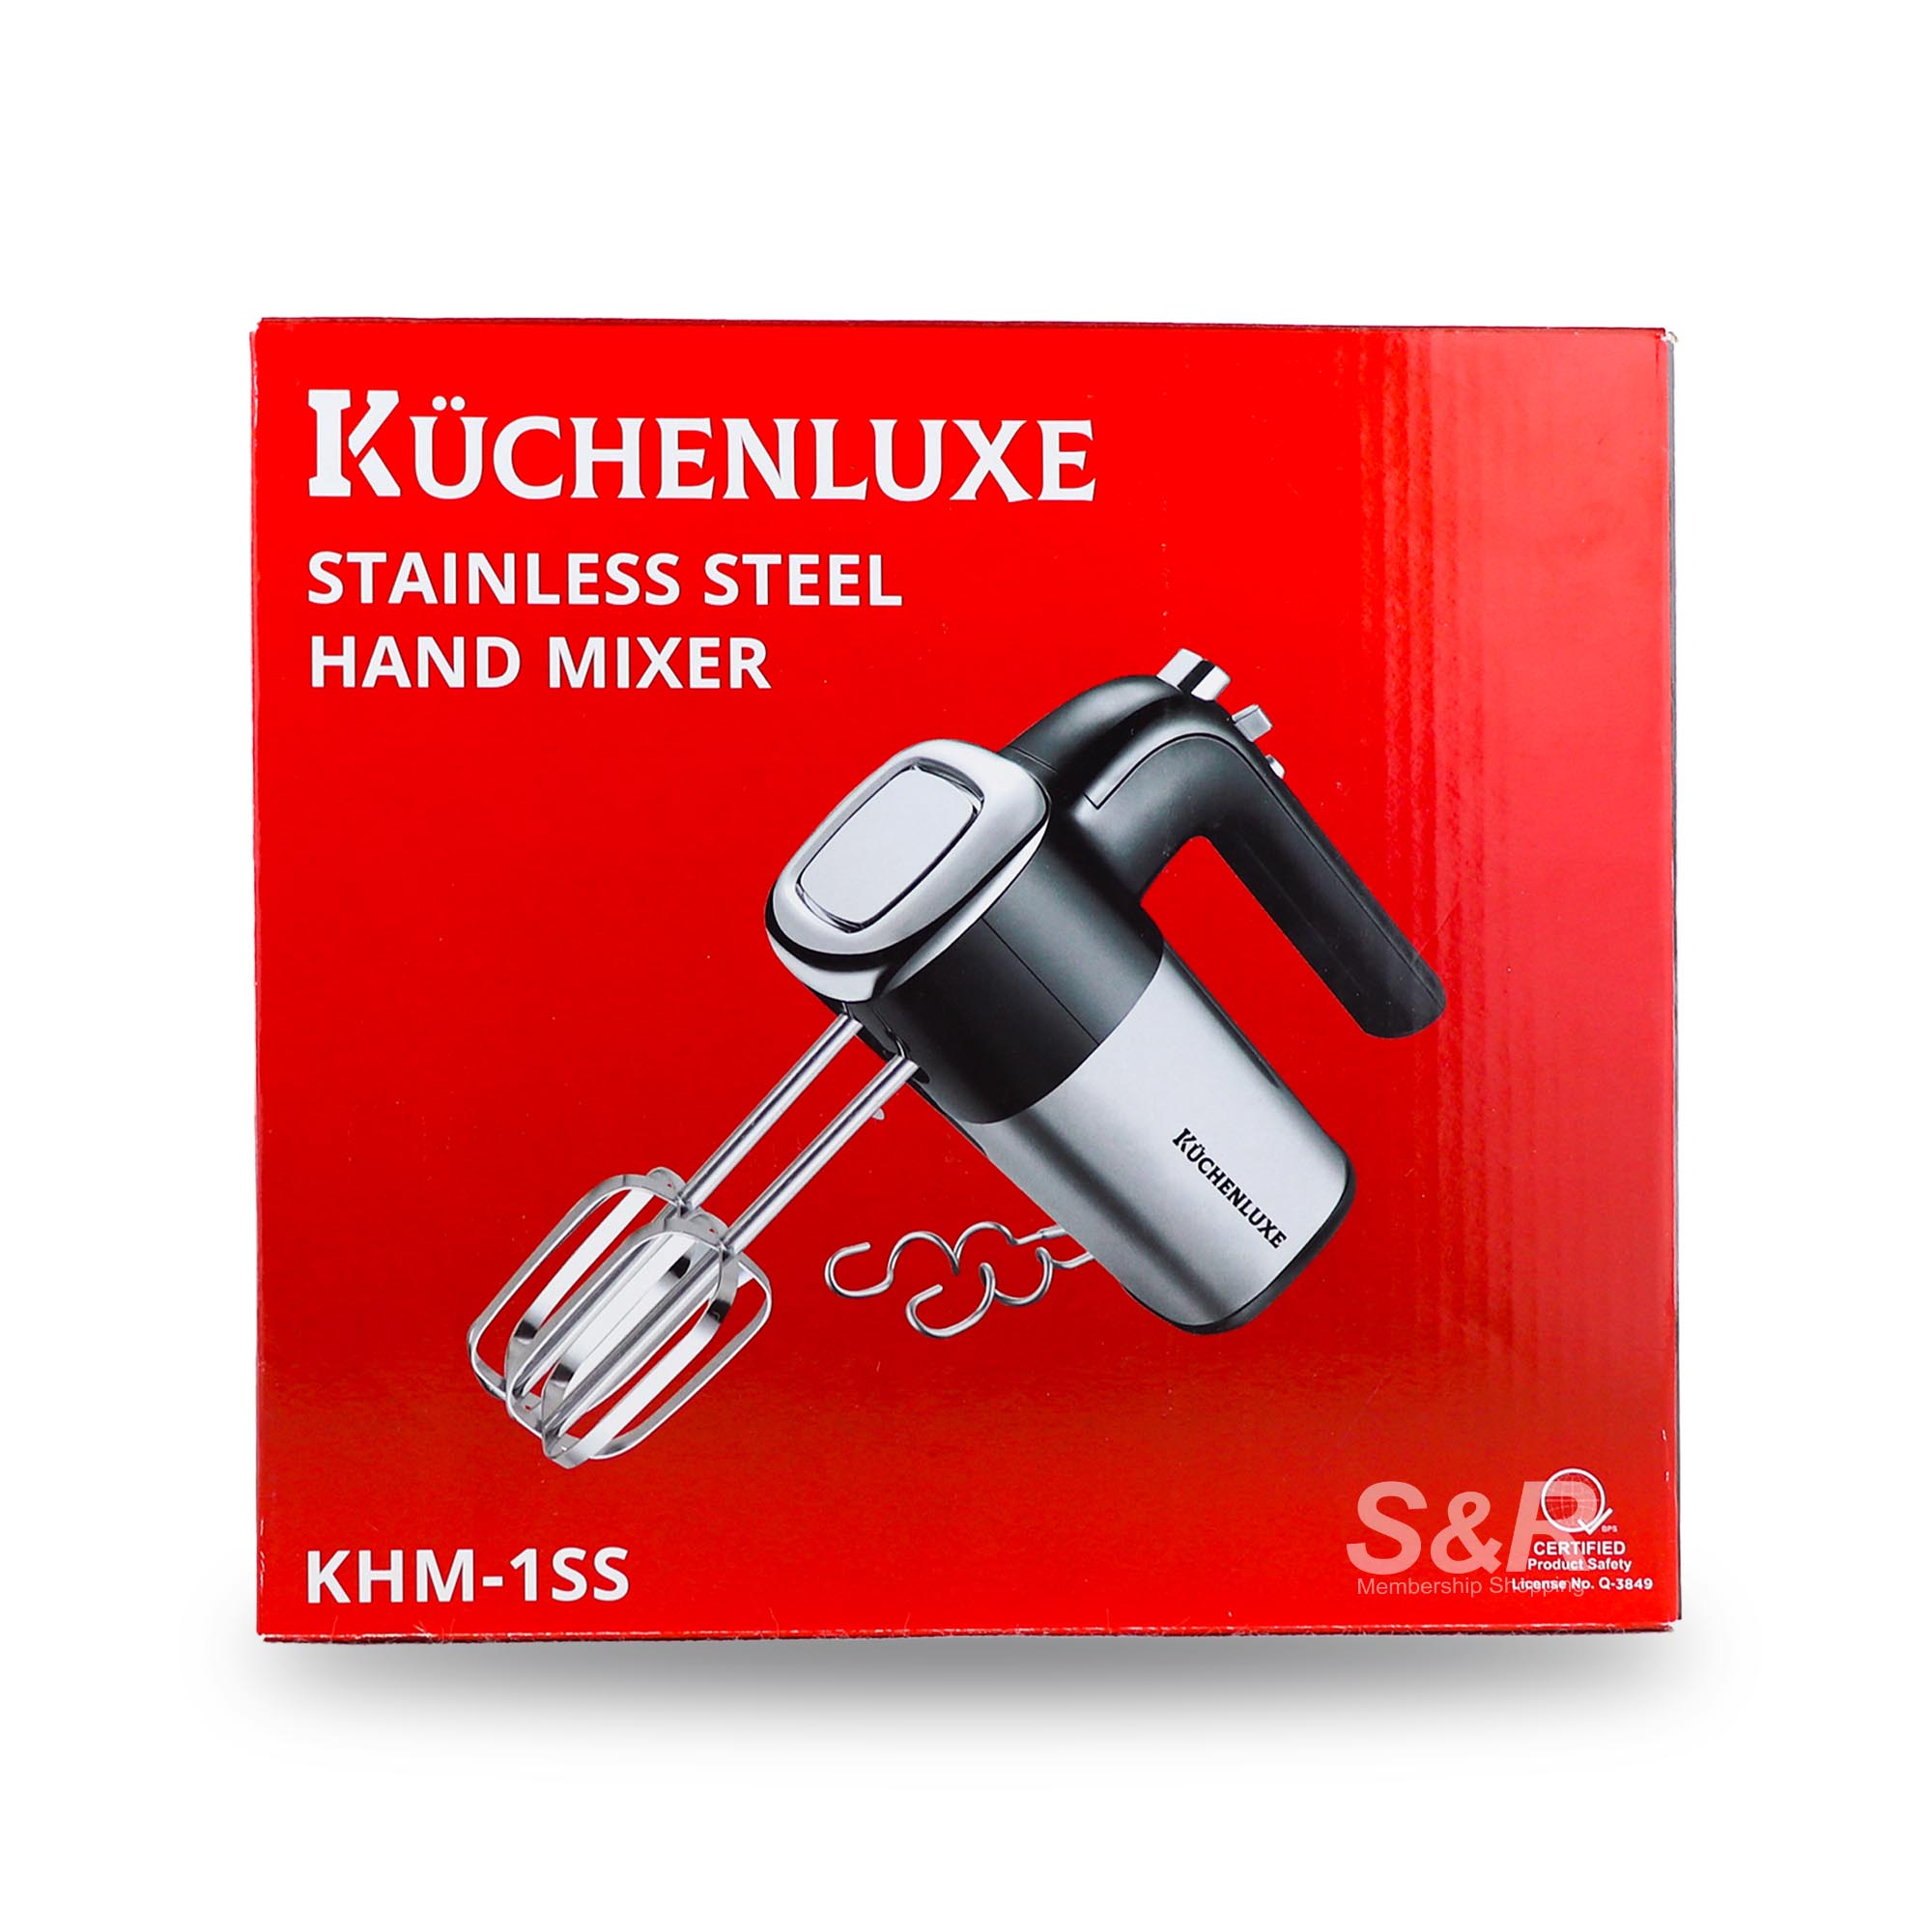 Kuchenluxe Stainless Steel Hand Mixer